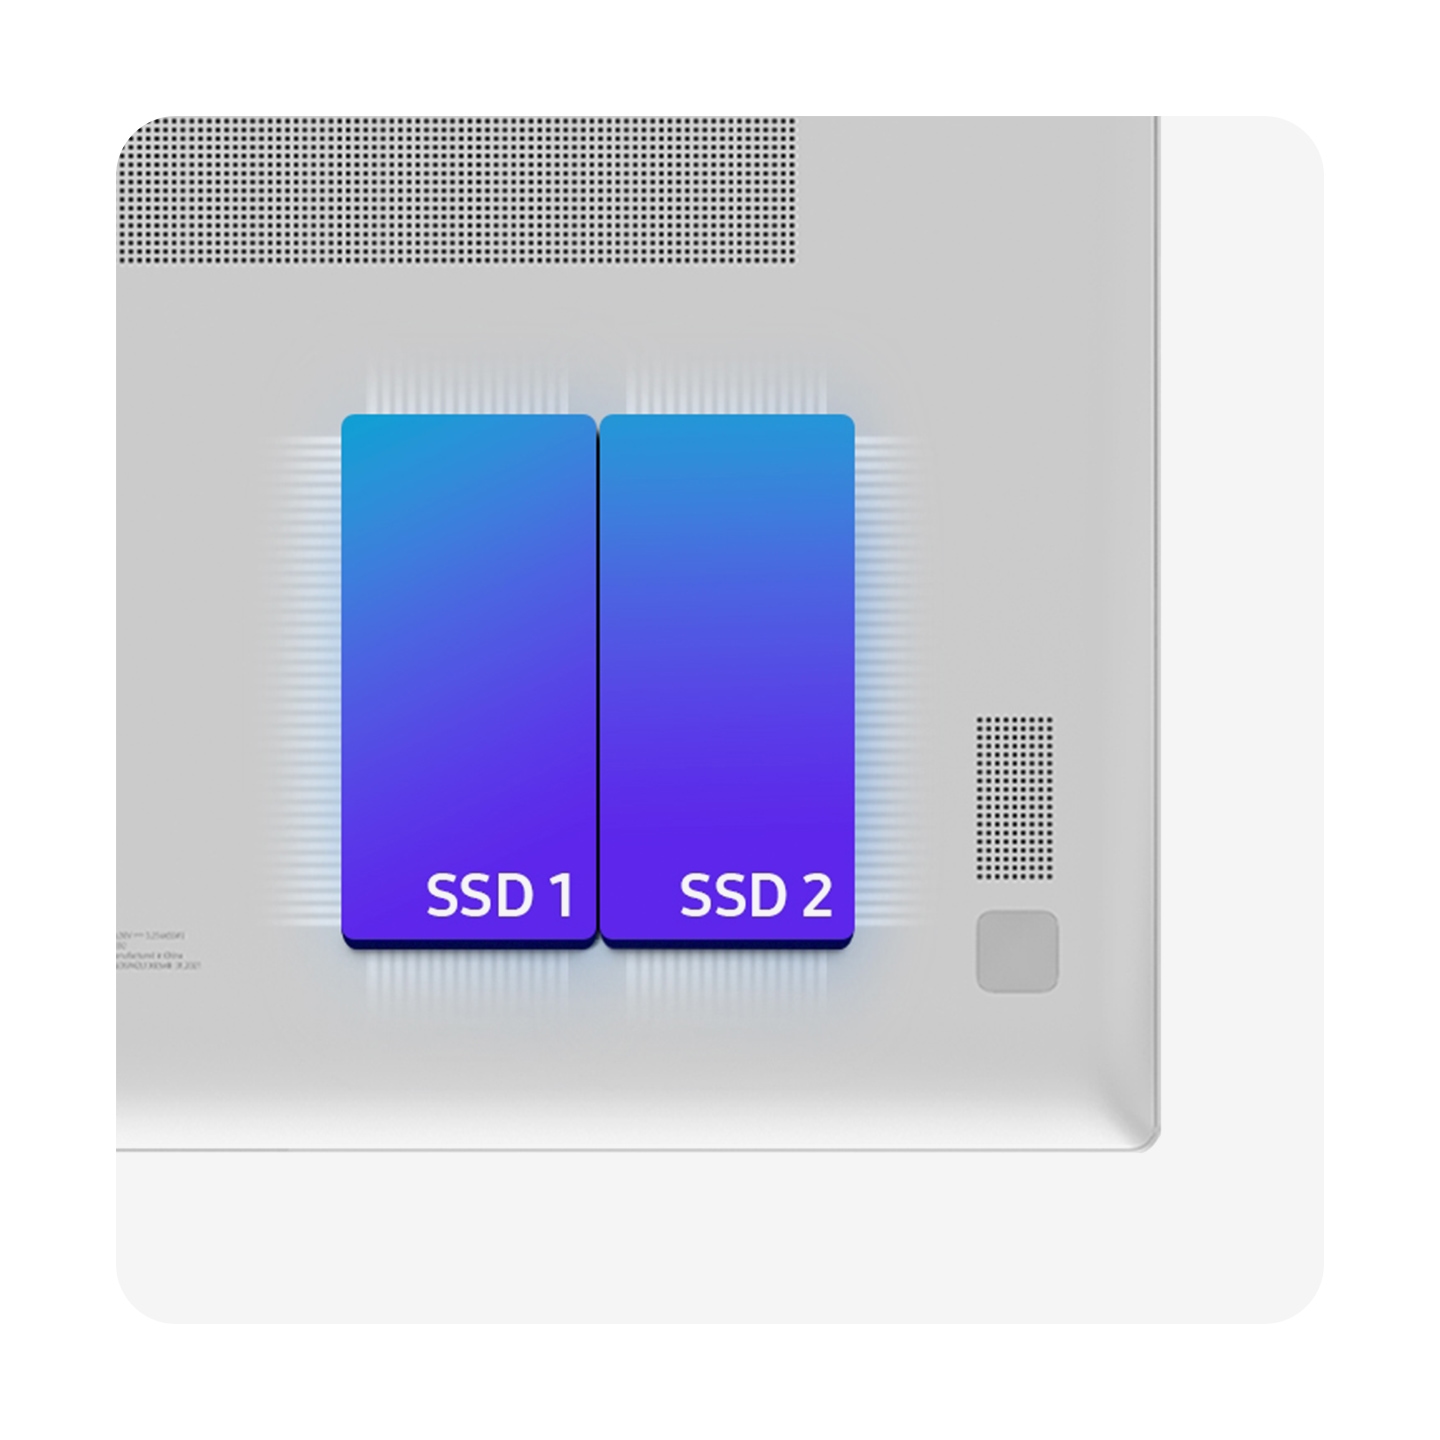 Amplíe su espacio en disco con Dual SSD